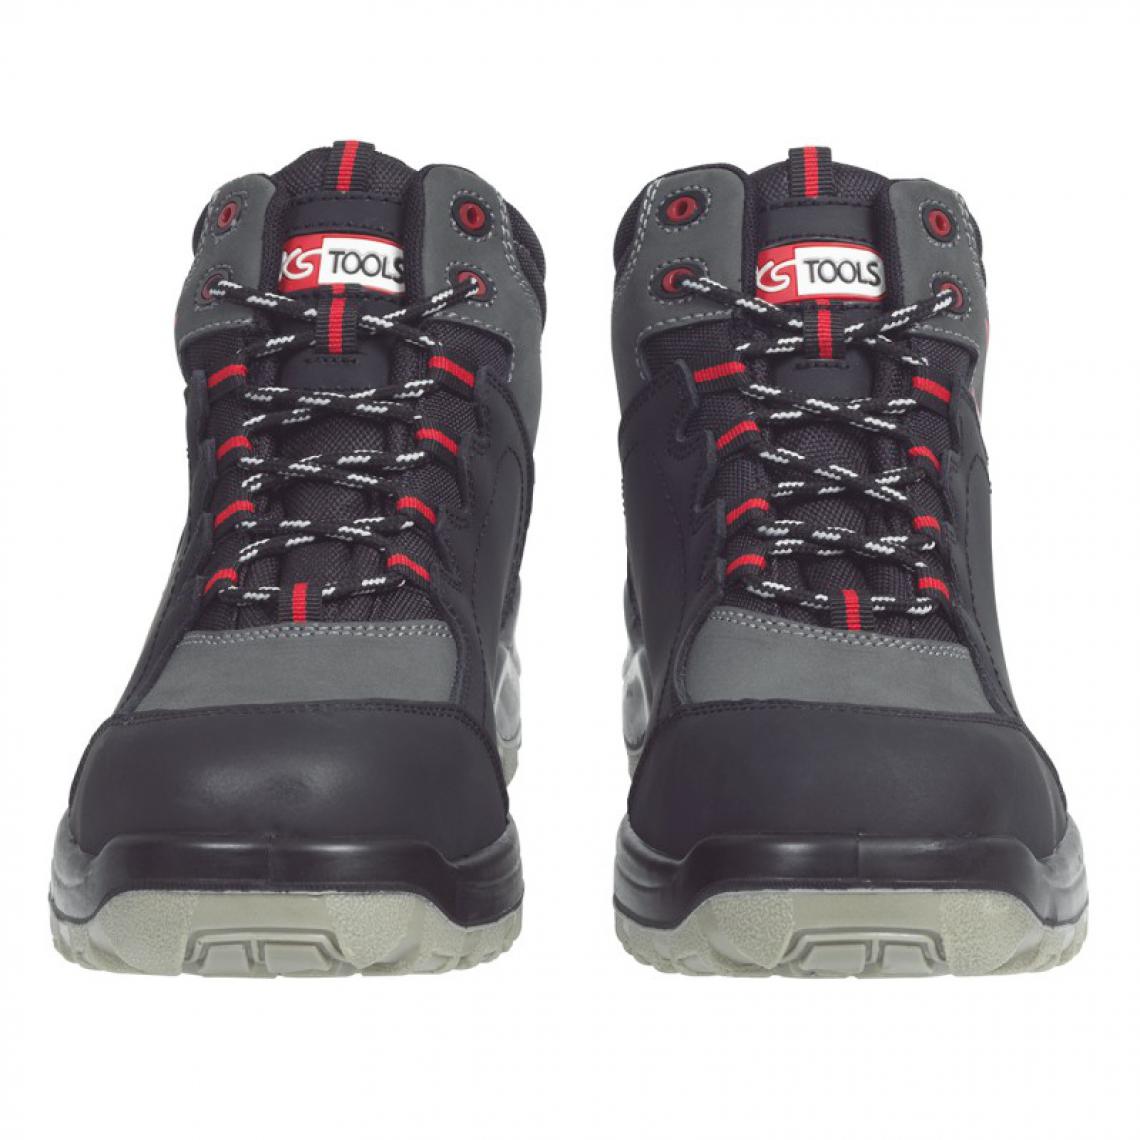 Kstools - Chaussures de sécurité montante KSTOOLS Couleur grise et noire taille 43 - Equipement de Protection Individuelle